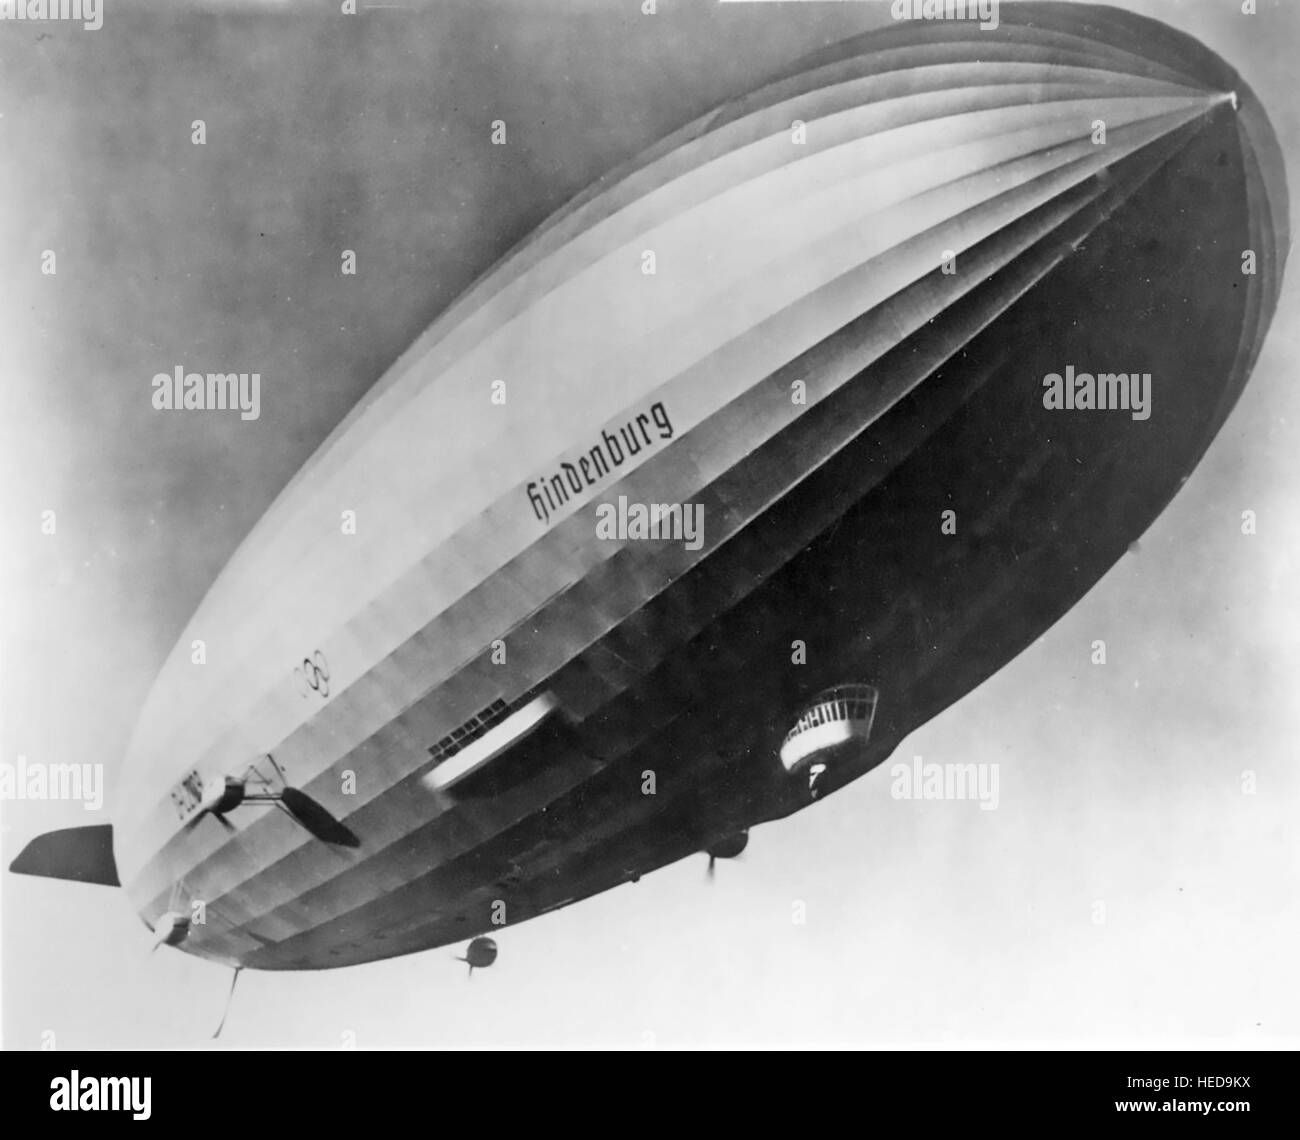 LZ 129 HINDENBERG deutschen Zeppelin Luftschiff in Los Angeles im Jahr 1936 Stockfoto